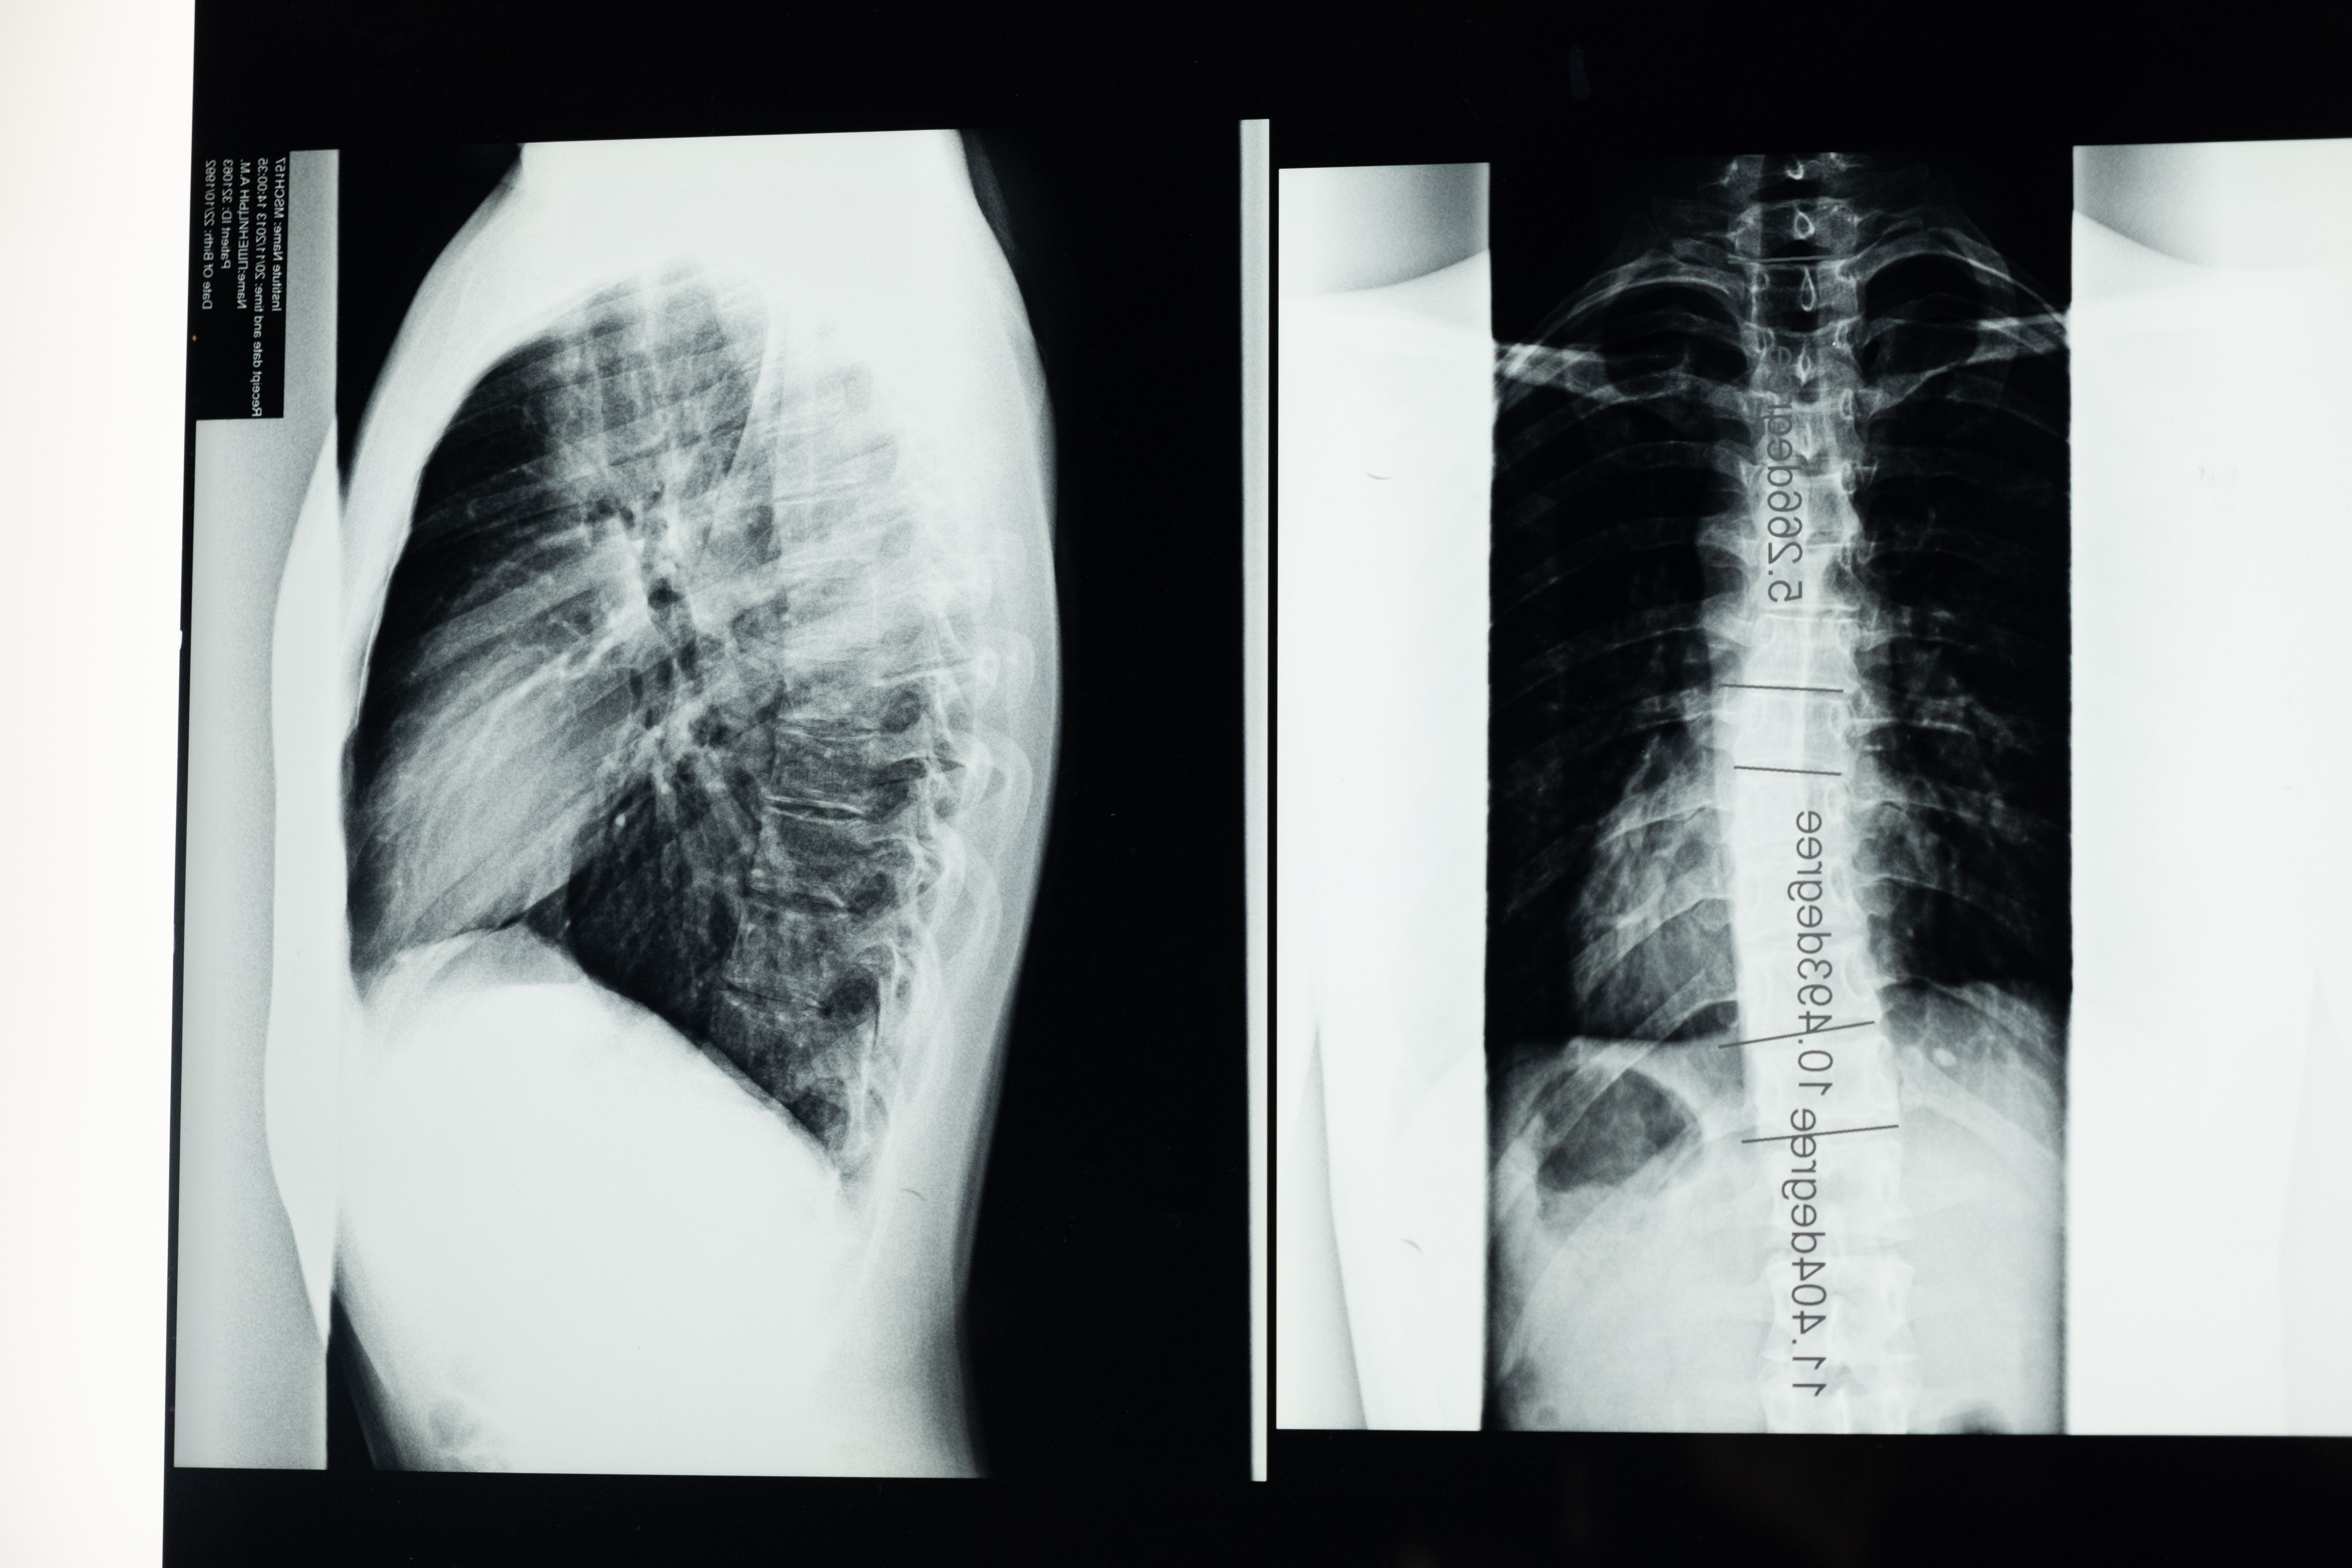 髋-腰综合征与脊柱骨盆矢状位生物力学关系